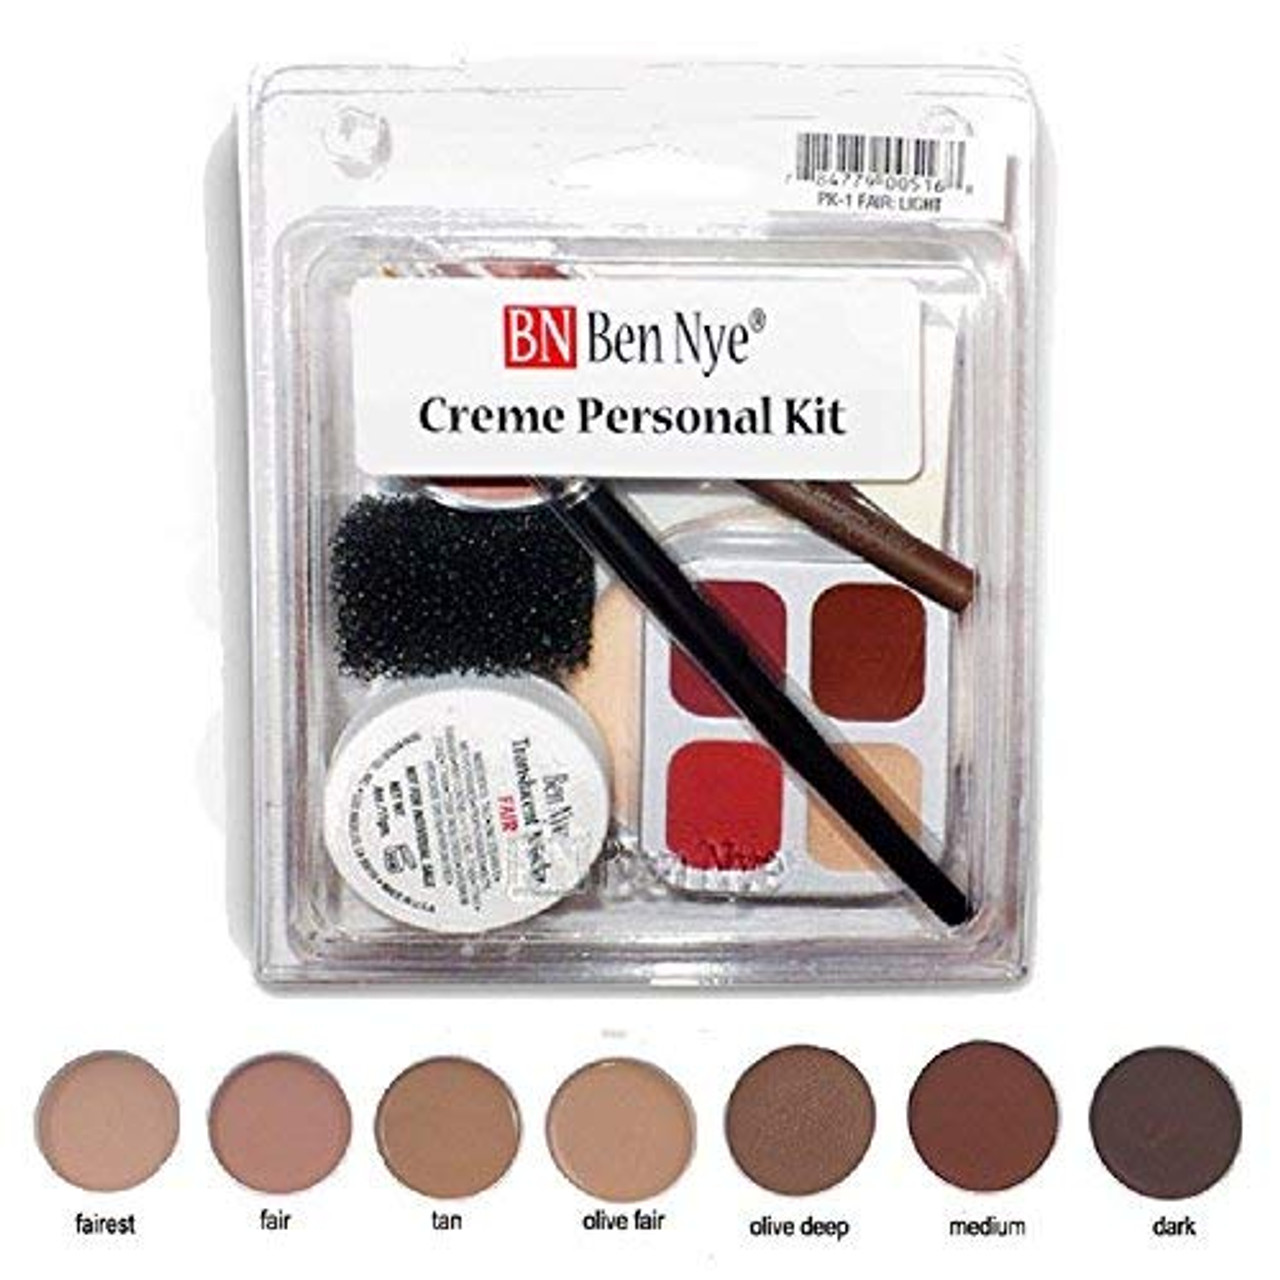 Ben Nye Creme Personal Kit